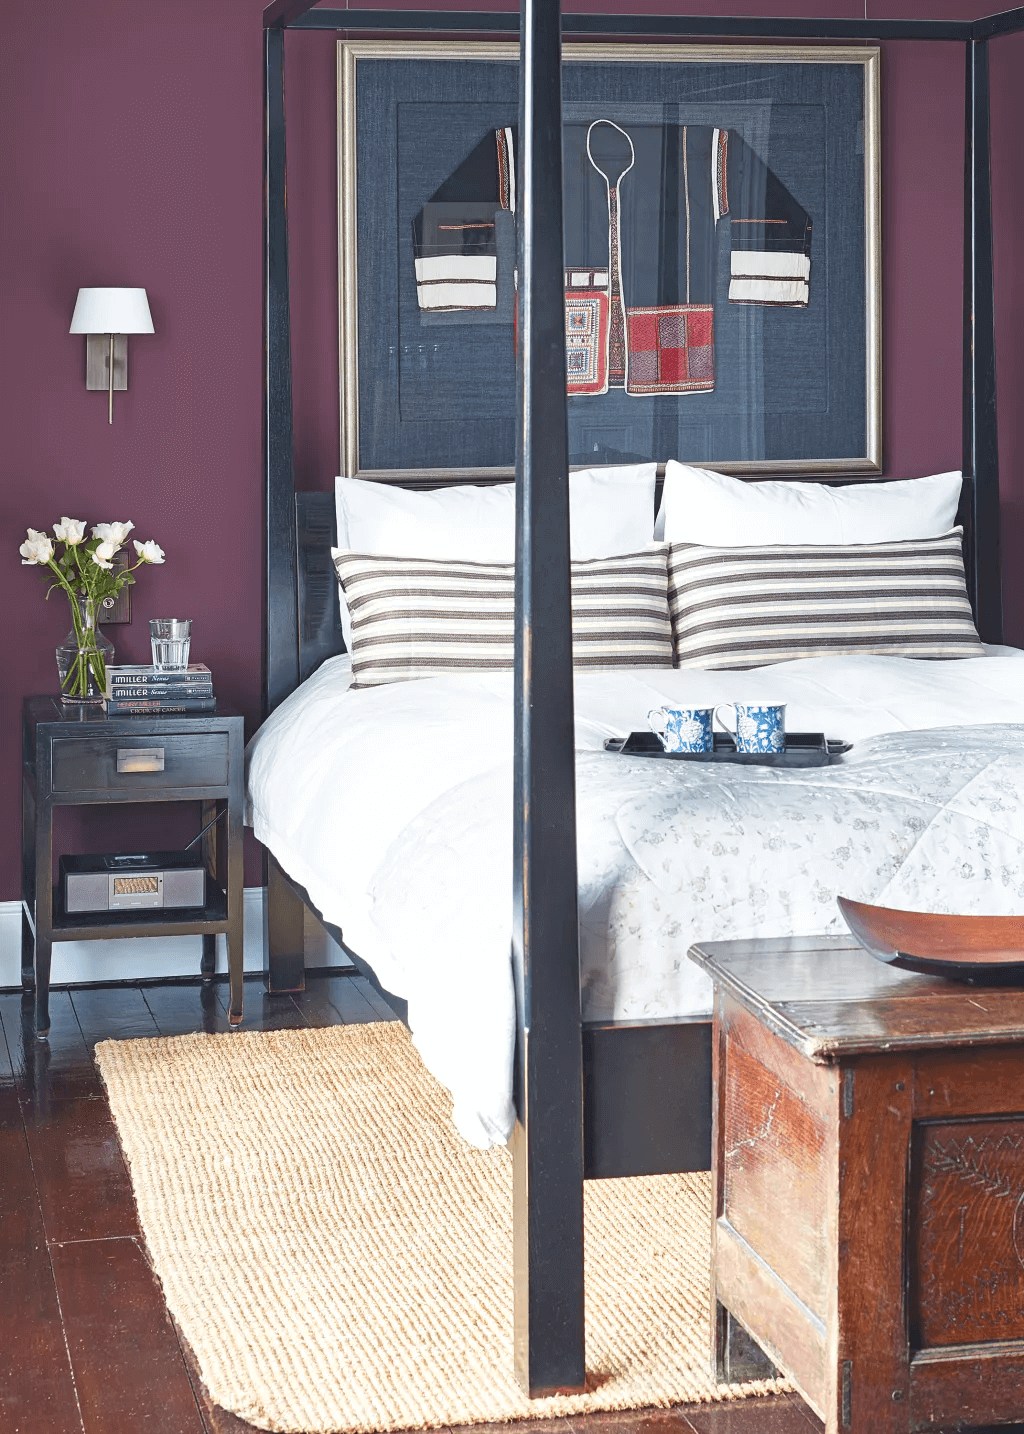 Một thiết kế phòng ngủ màu tím mận dễ dùng lấy cảm hứng từ Art Deco